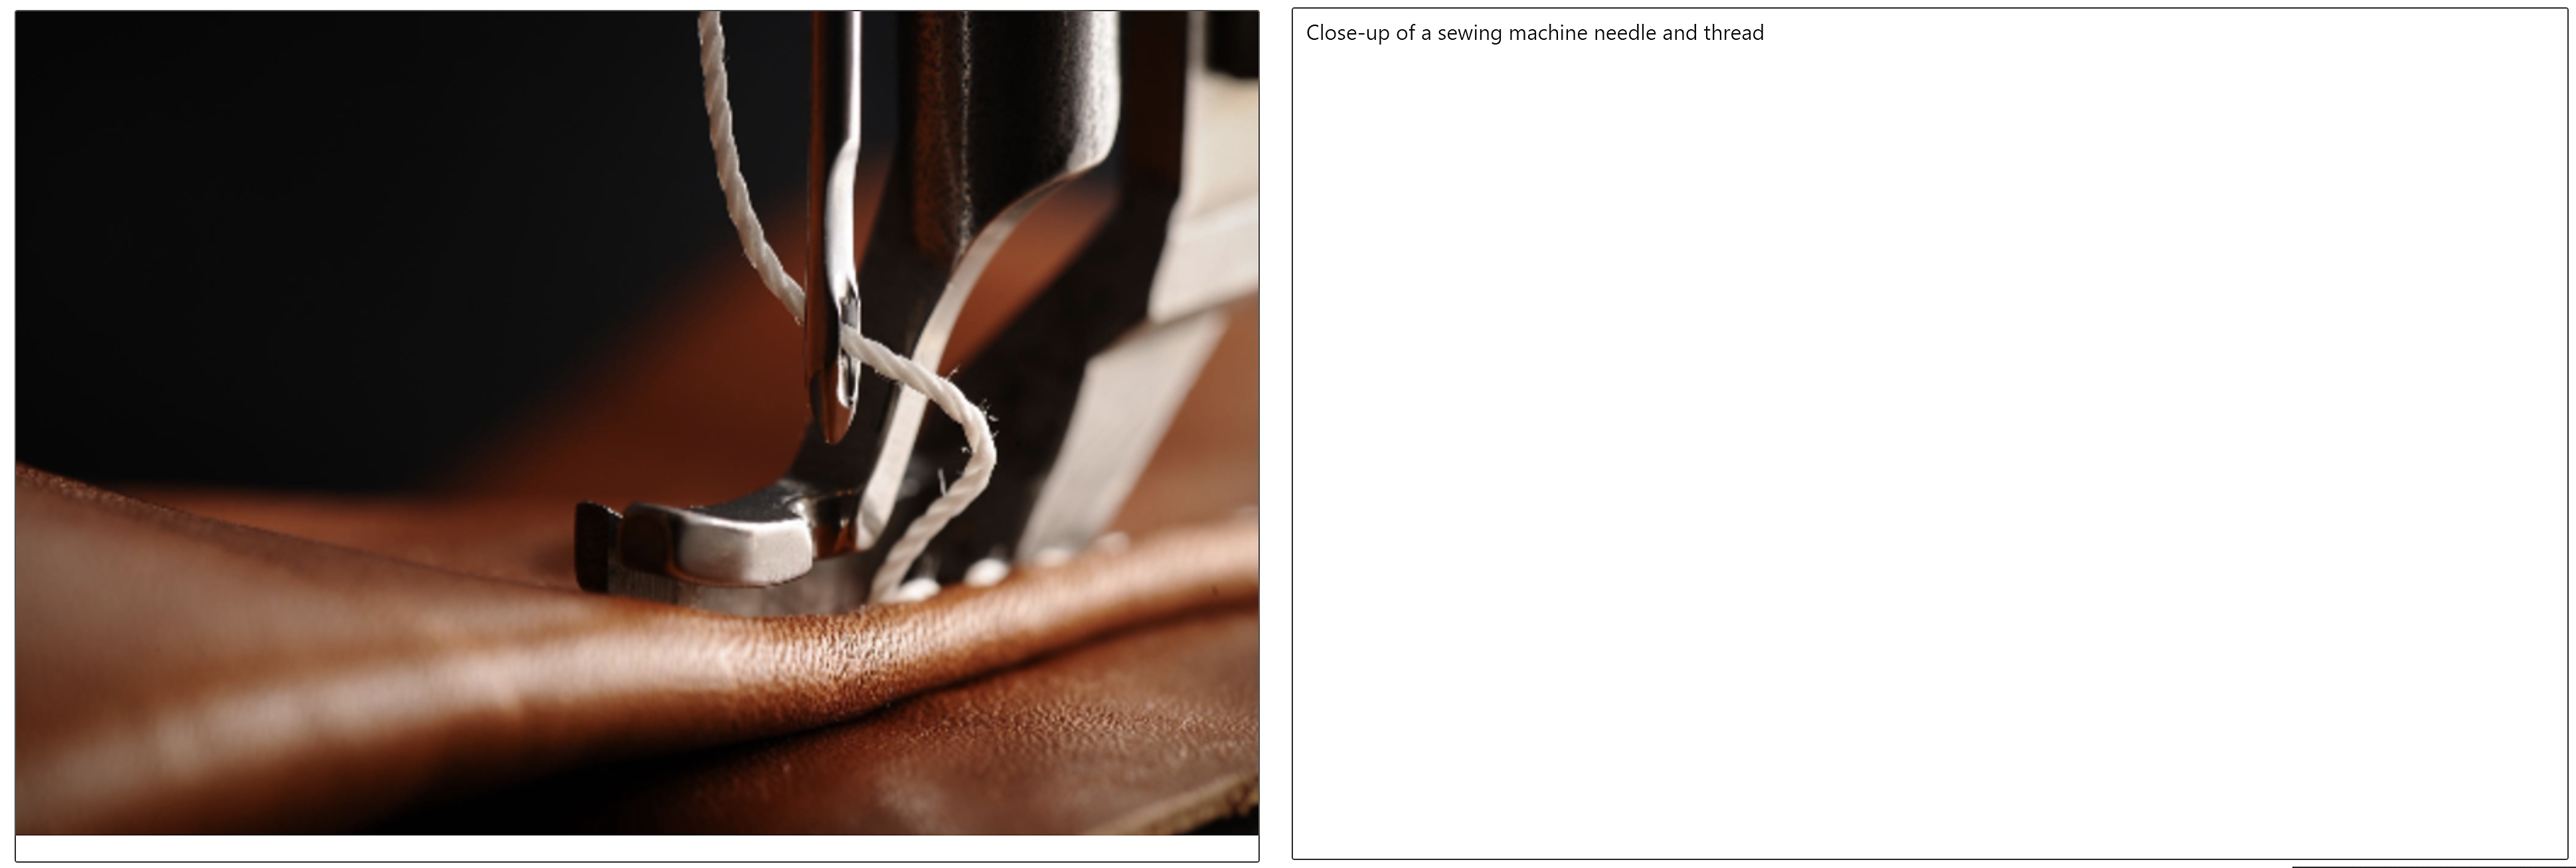 Um close de uma agulha de máquina de costura e um fio passando pelo couro e uma legenda da imagem ao lado disso 